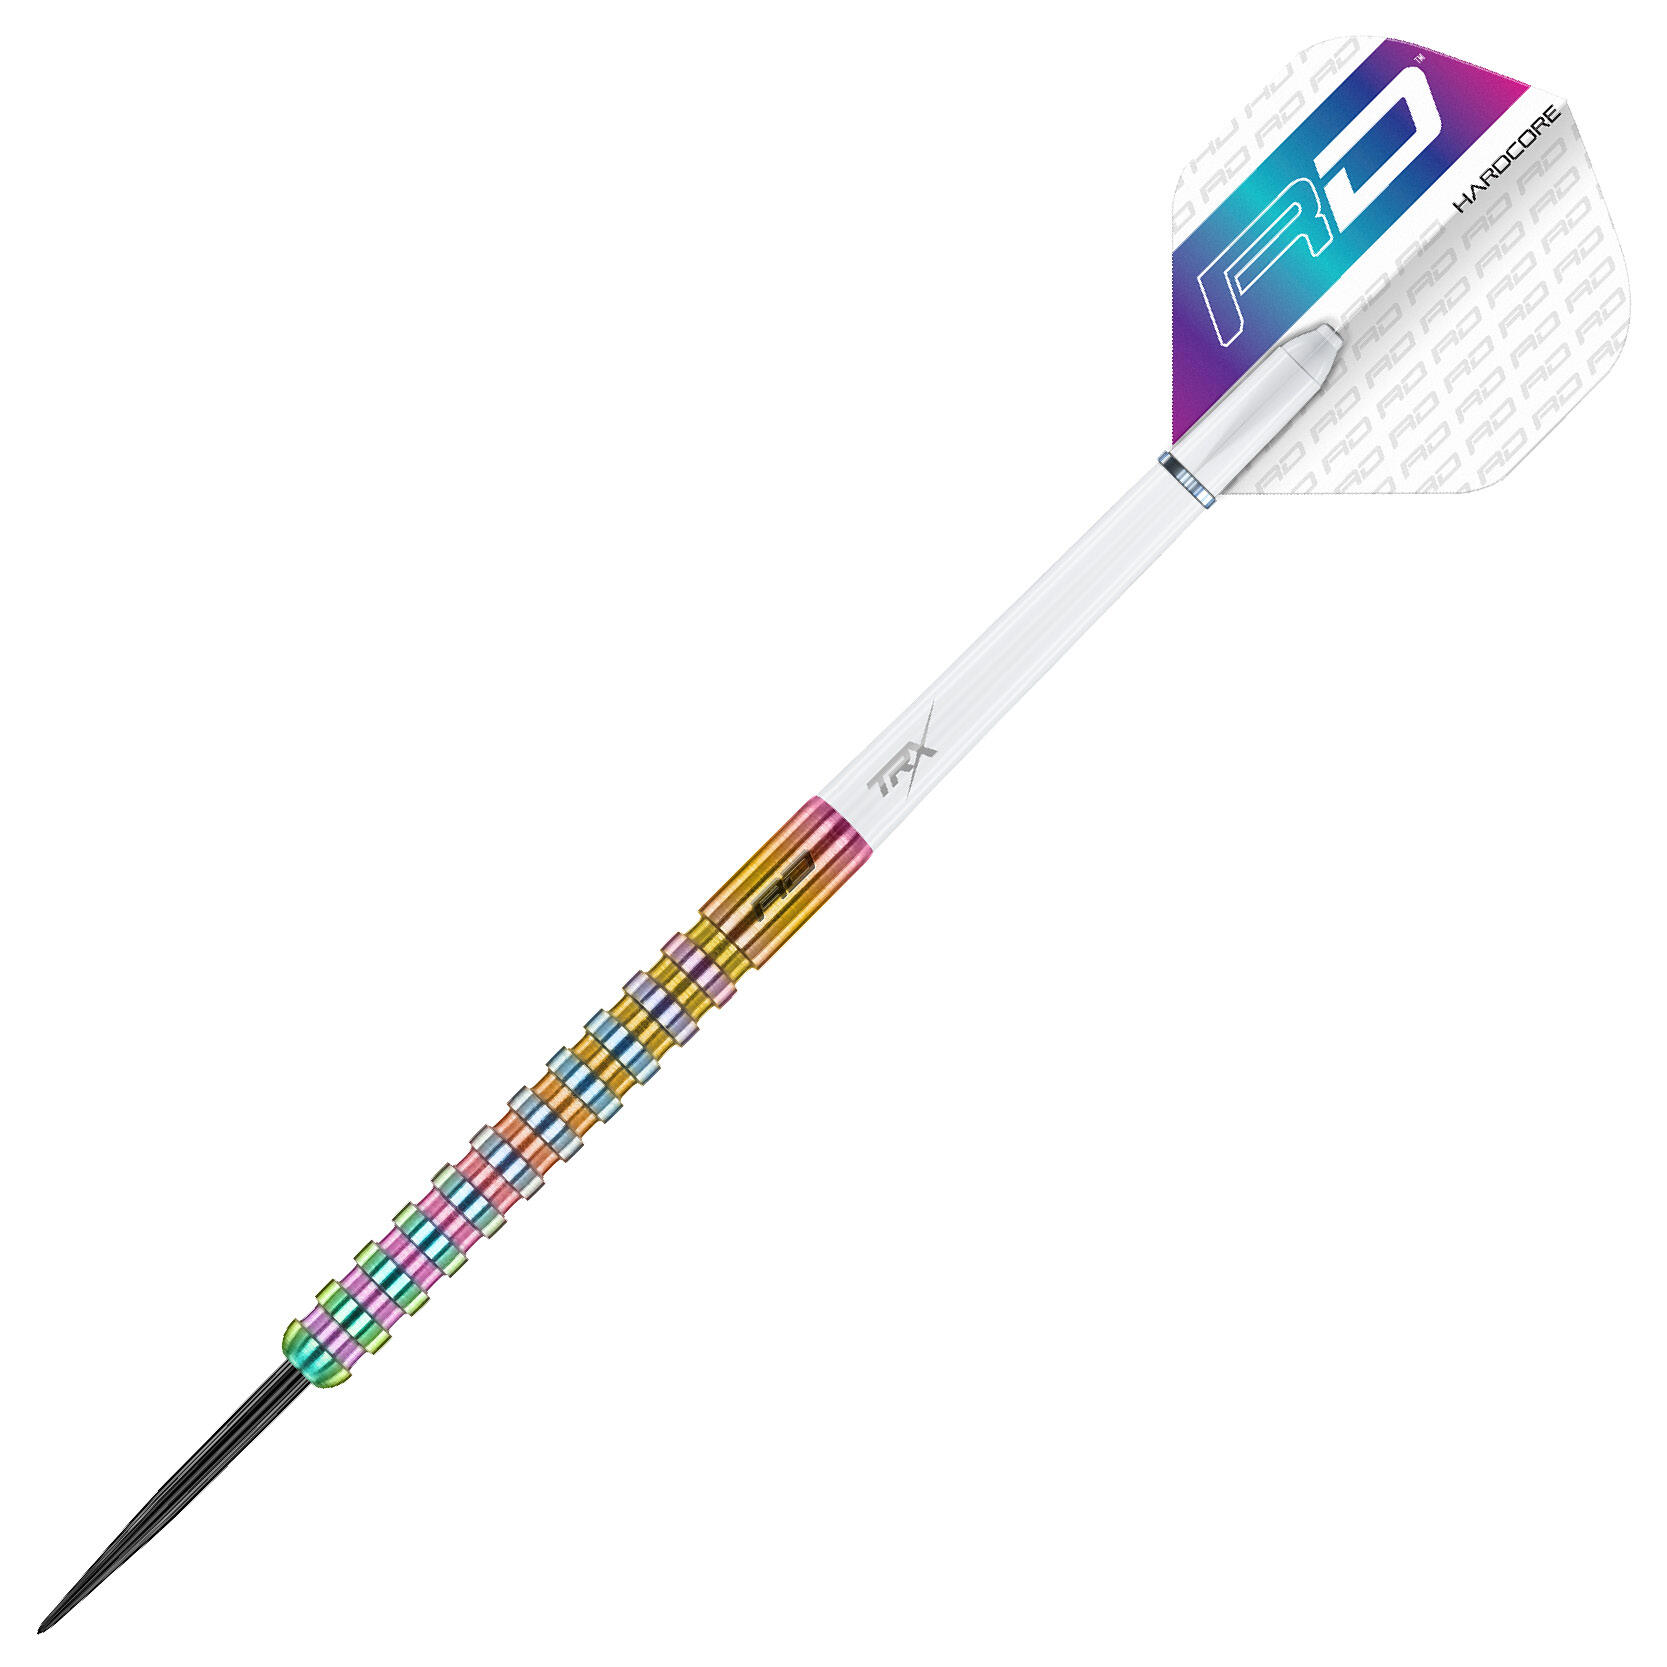 Javelin Spectron 24 Gram Premium Tungsten Darts Set with Flights & Stems 3/7